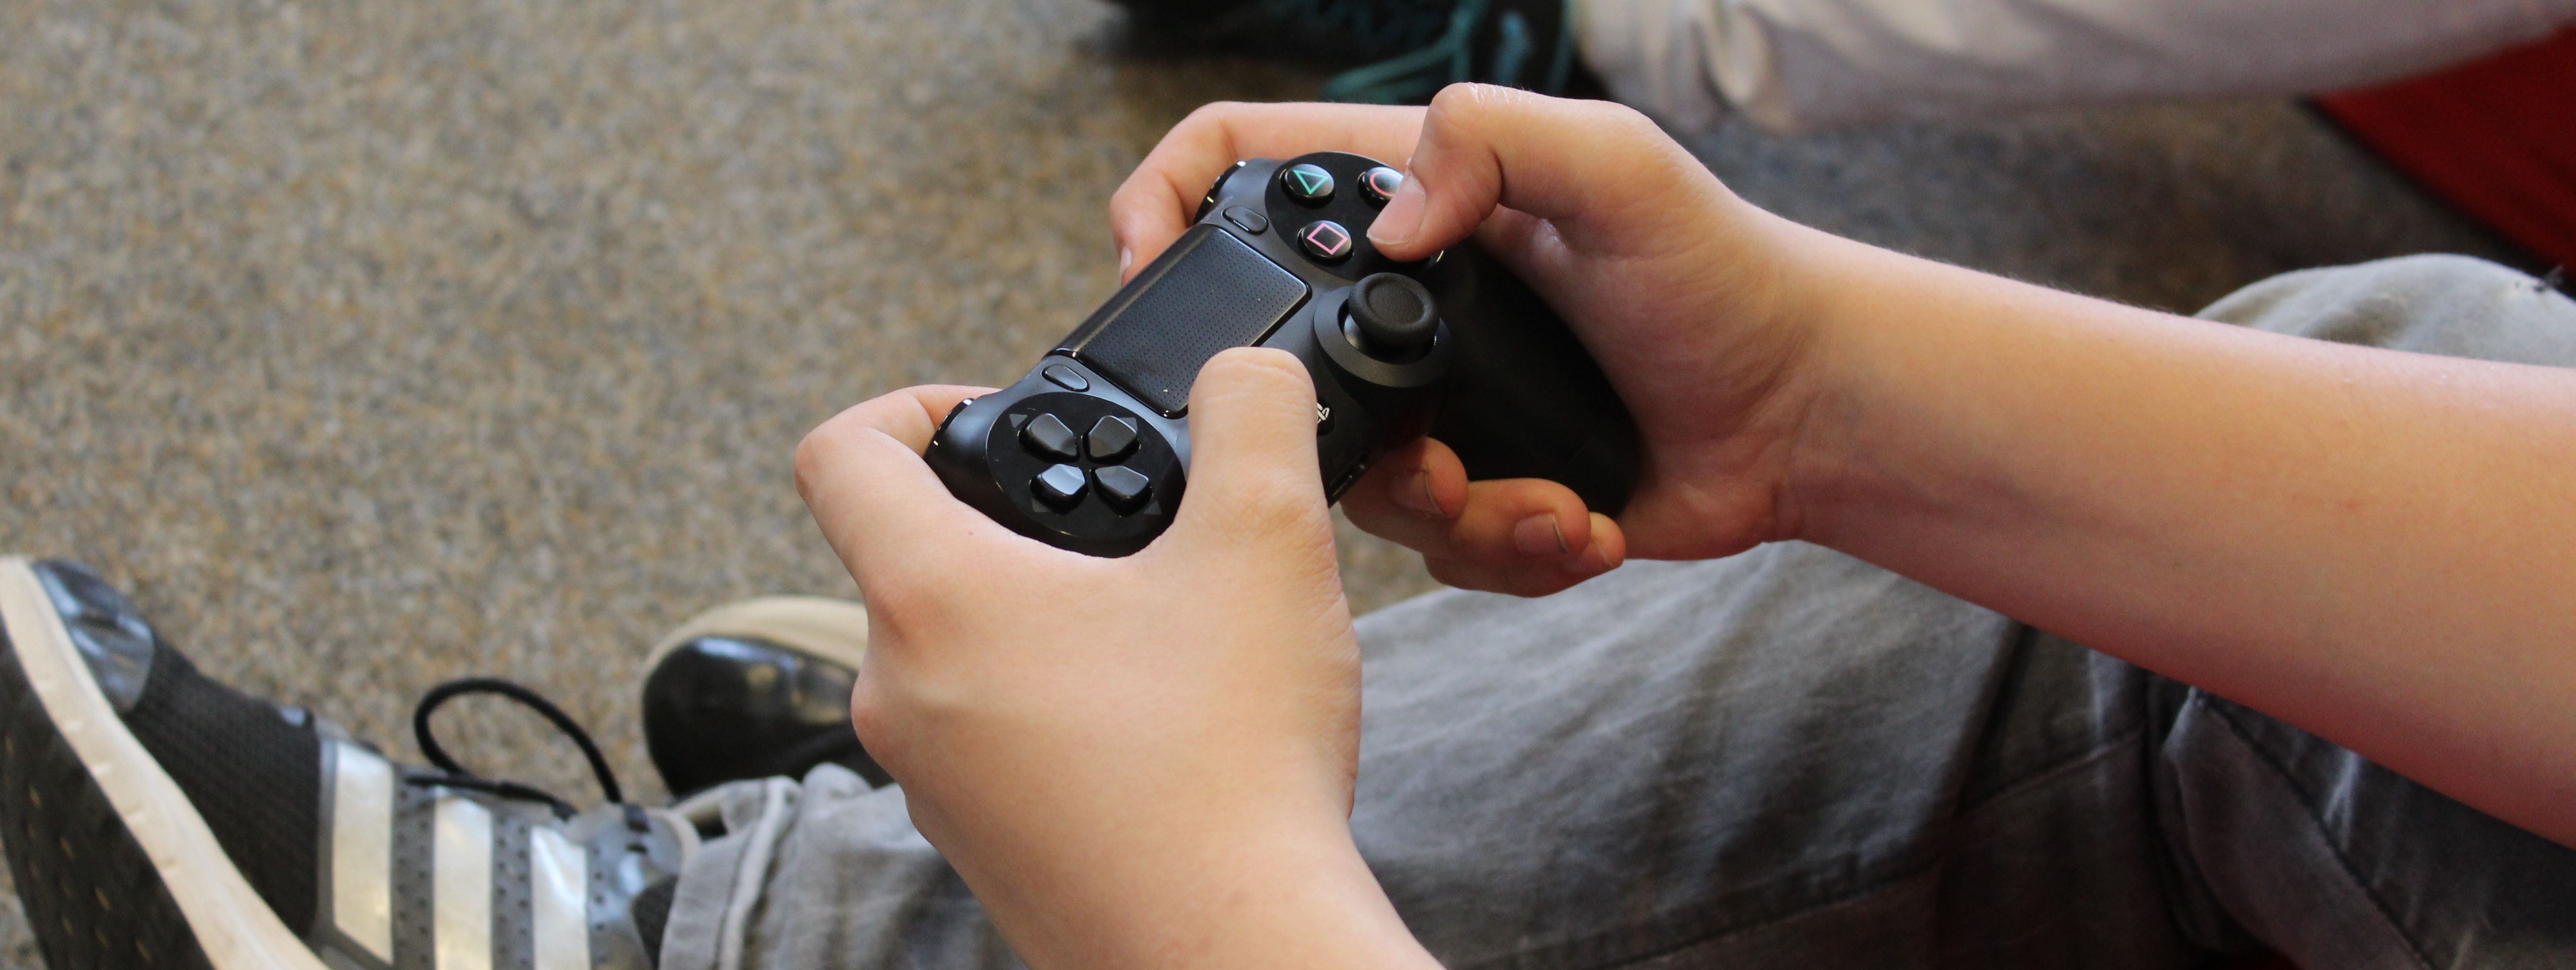 Zwei Hände mit einem Controler für eine Playstation